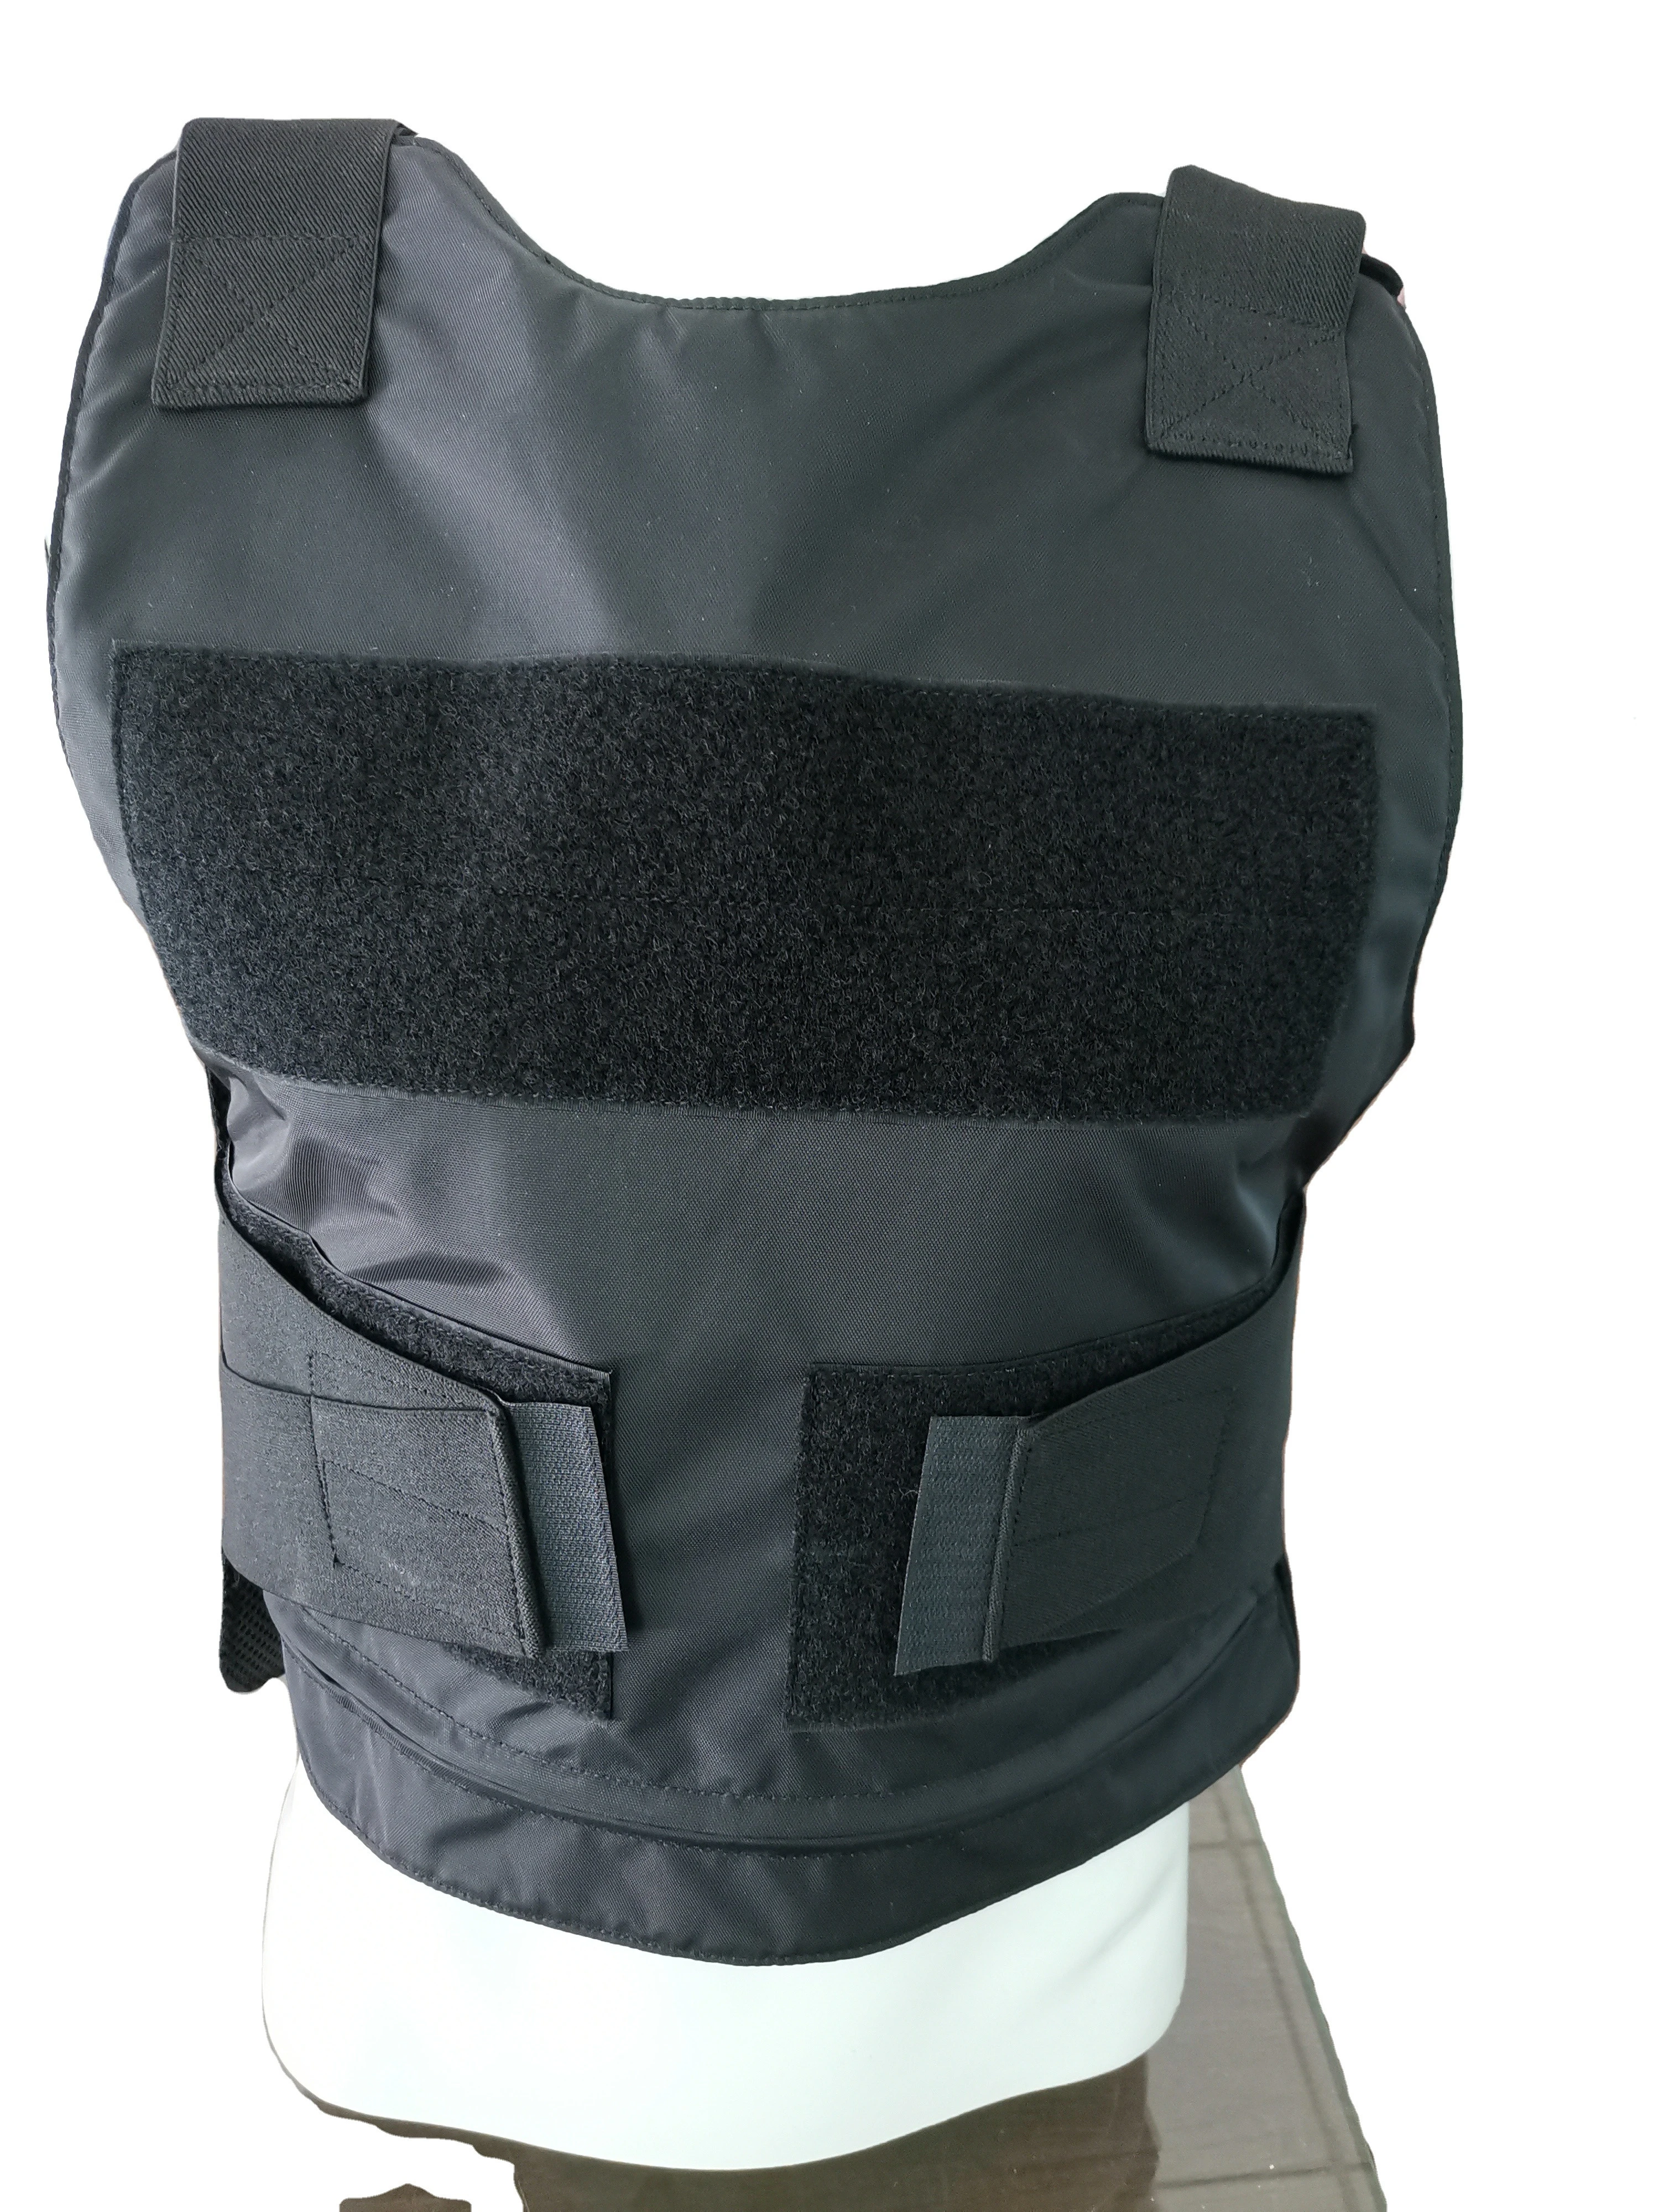 ANKEY PE Ballistic Material Inner Side Bullet Proof Vest